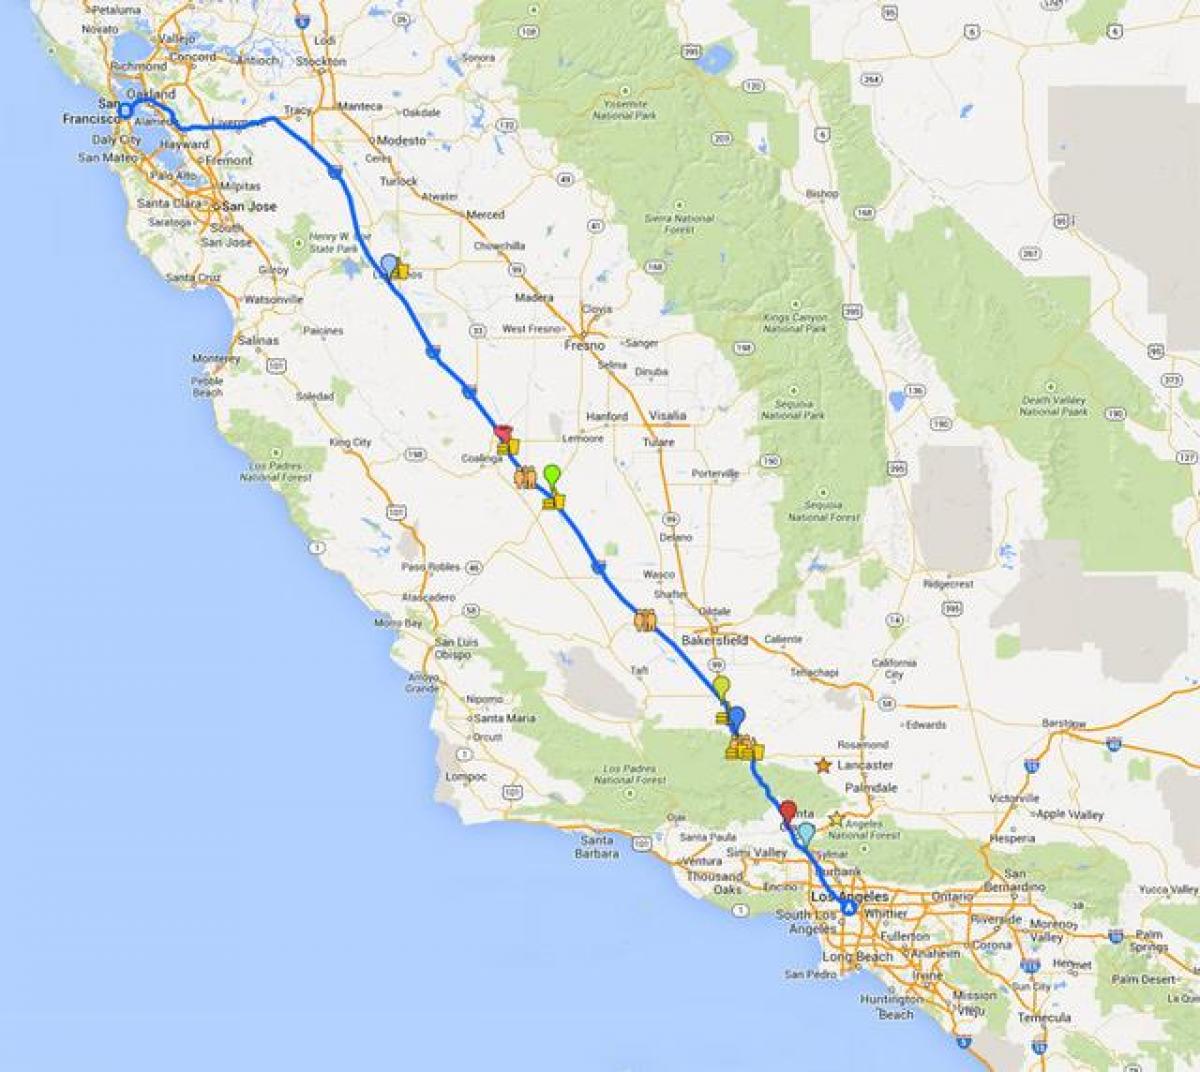 Kort over San Francisco kører tour